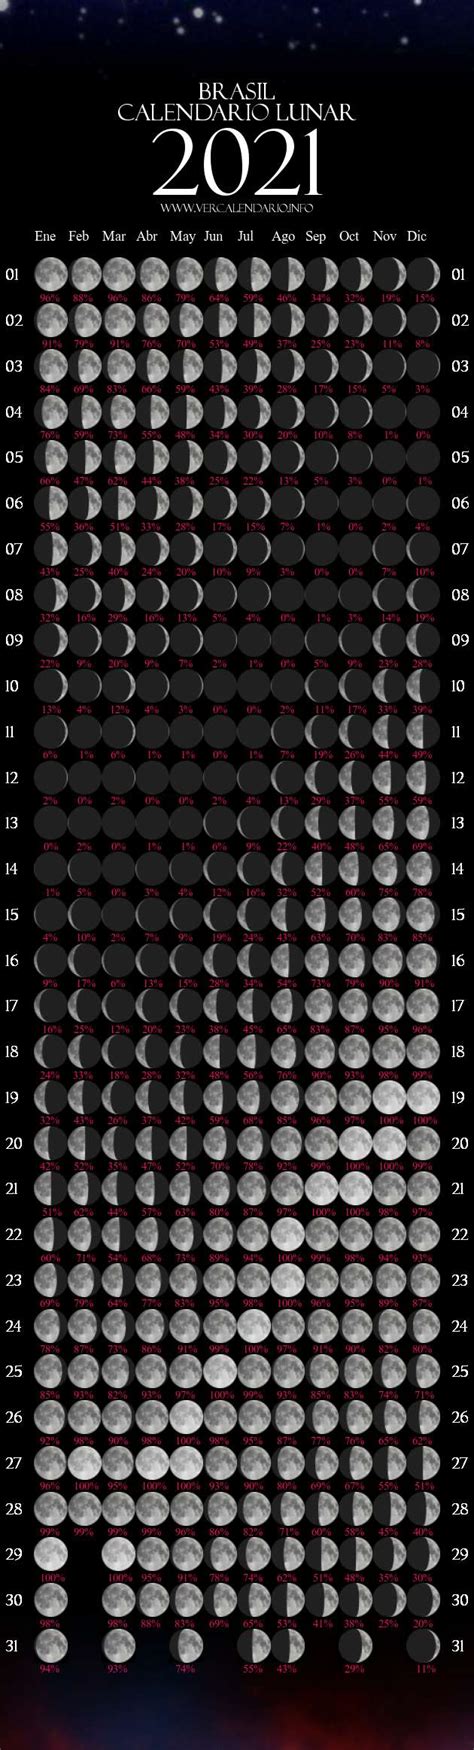 Calendario Lunar 2021 Calendario Lunar Marzo De 2021 Fases Lunares